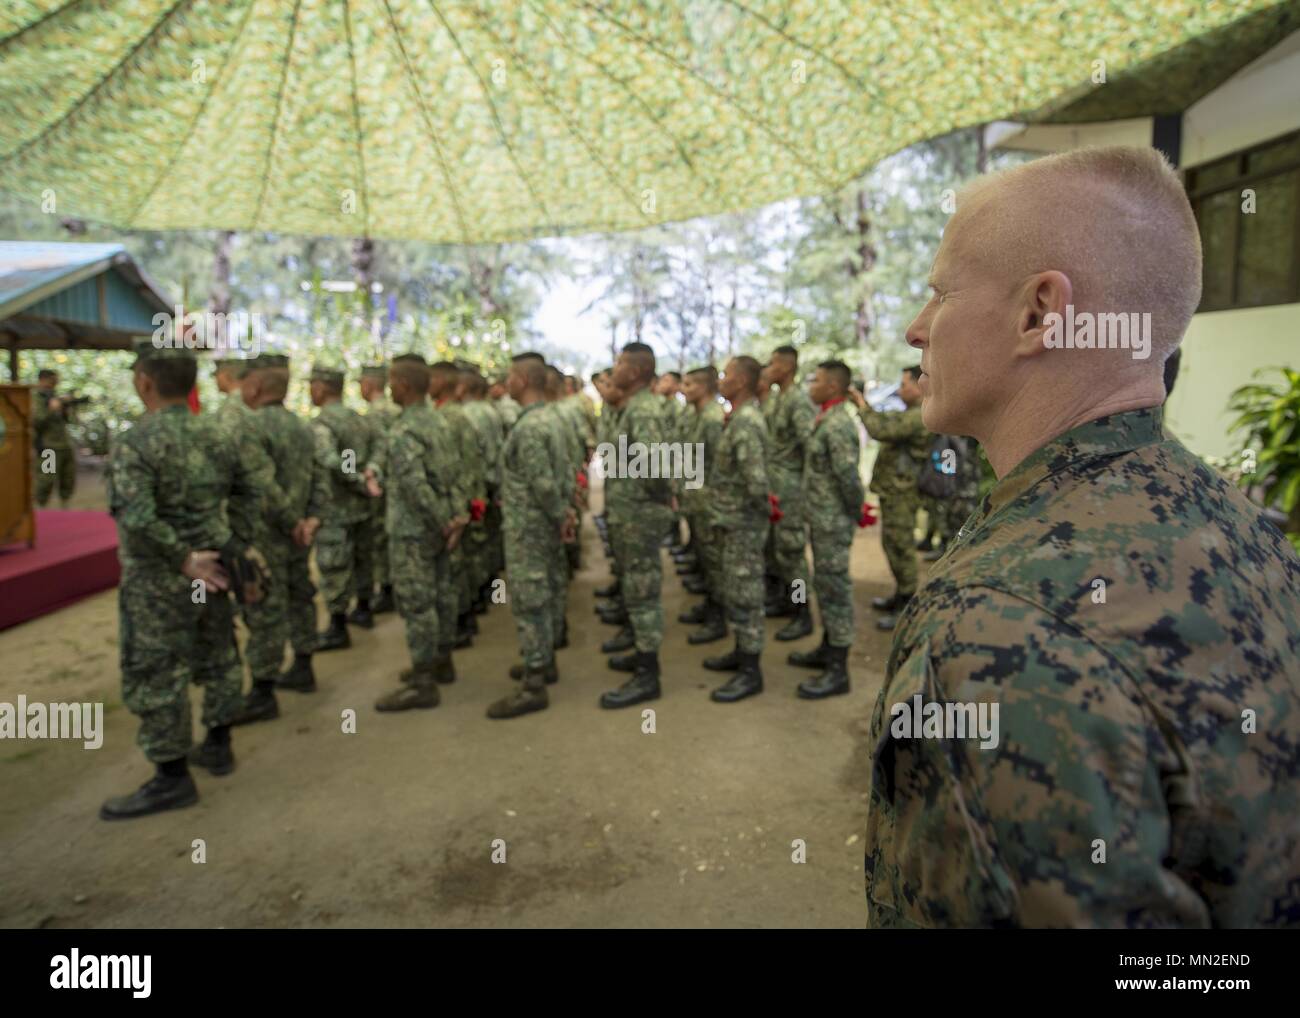 Cuerpo de Marines de EE.UU Brig. Gen. Thomas Weidley, comandante general de Marina, 01 aviones de ala, se sitúa en el desfile resto con miembros de las Fuerzas Armadas de Filipinas durante el ejercicio en la Base Naval Balikatan Camilo Osias, Santa Ana, Cagayan, Filipinas 10 de mayo de 2018, 10 de mayo de 2018. Ejercicio Balikatan, en su 34ª iteración, en EE.UU. anual es un ejercicio de entrenamiento militar de Filipinas se centraron en una gran variedad de misiones, incluida la asistencia humanitaria y de socorro en casos de desastre, la lucha contra el terrorismo, y otras operaciones militares combinadas celebrada del 7 de mayo al 18 de mayo. (Ee.Uu. Navy photo by Mass Communication Specialist Foto de stock